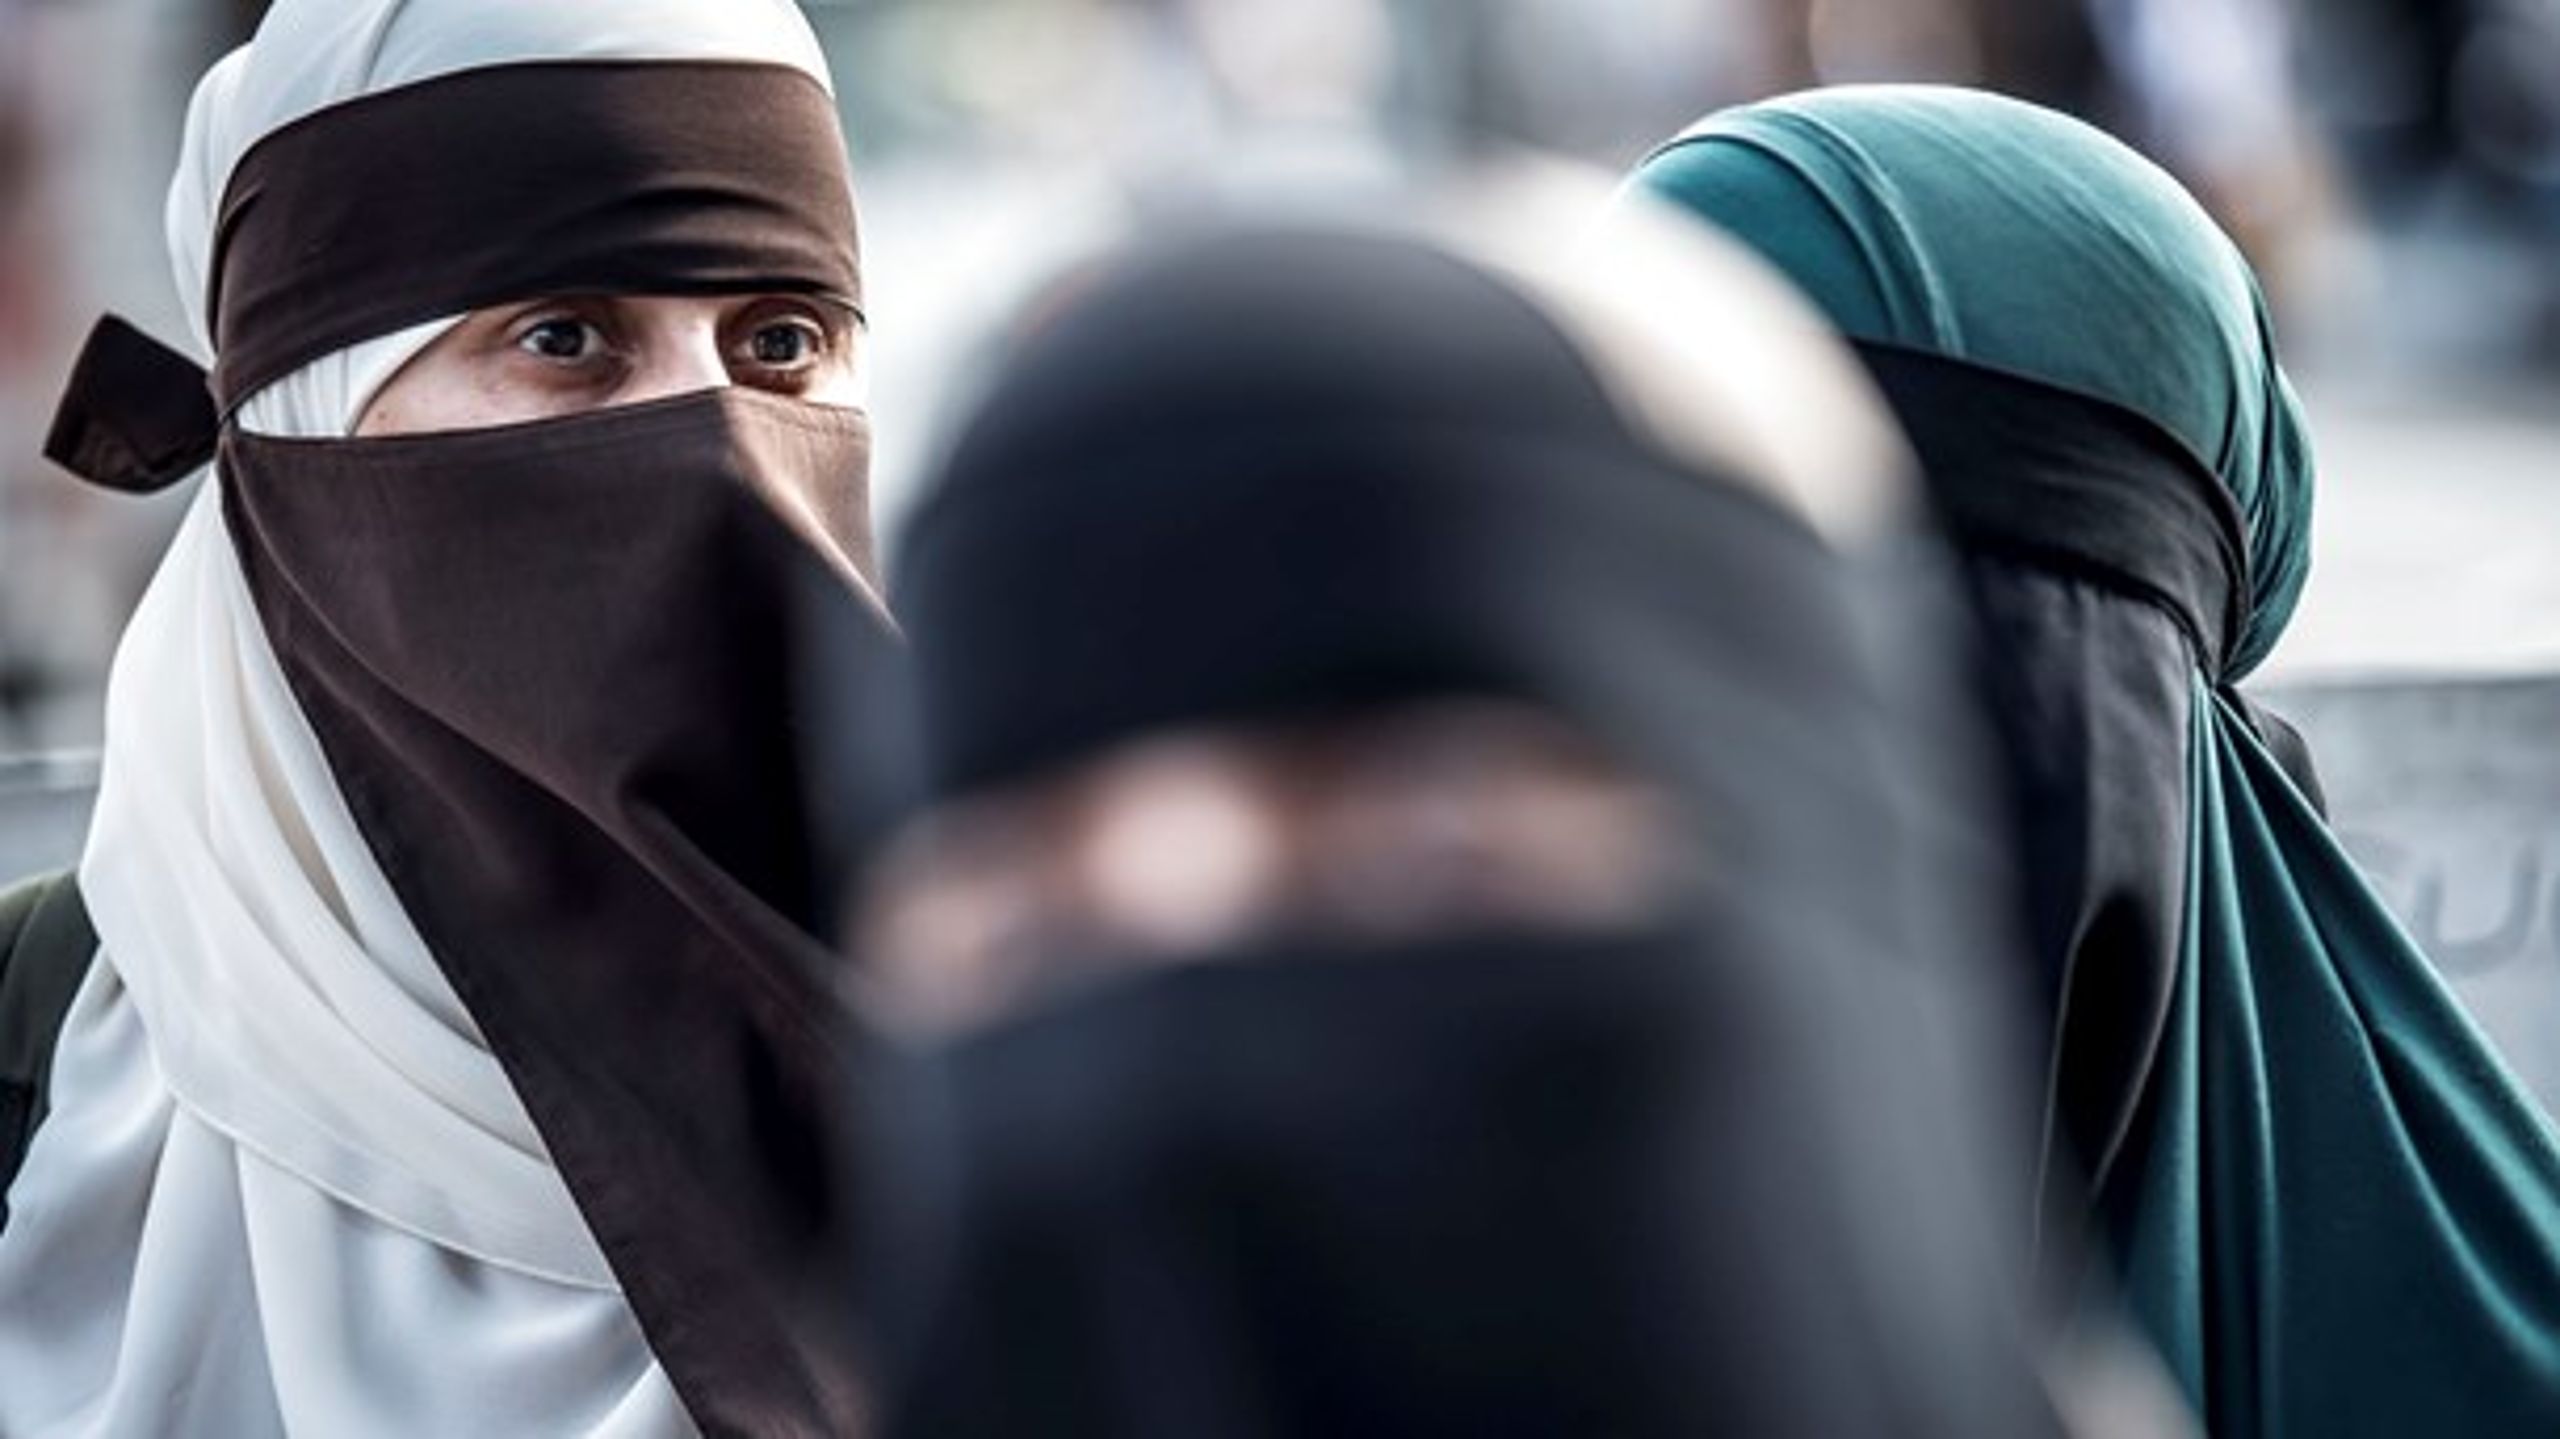 Det land, der i 2005 krævede, at minoriteter måtte tåle religionskritik i avisspalter, har i dag forbudt en lille sekt at bære burka, fordi det virker stødende og fornærmende på hovedkulturen. Et rent værdipolitisk selvmål, skriver Anne Sofie Allarp.